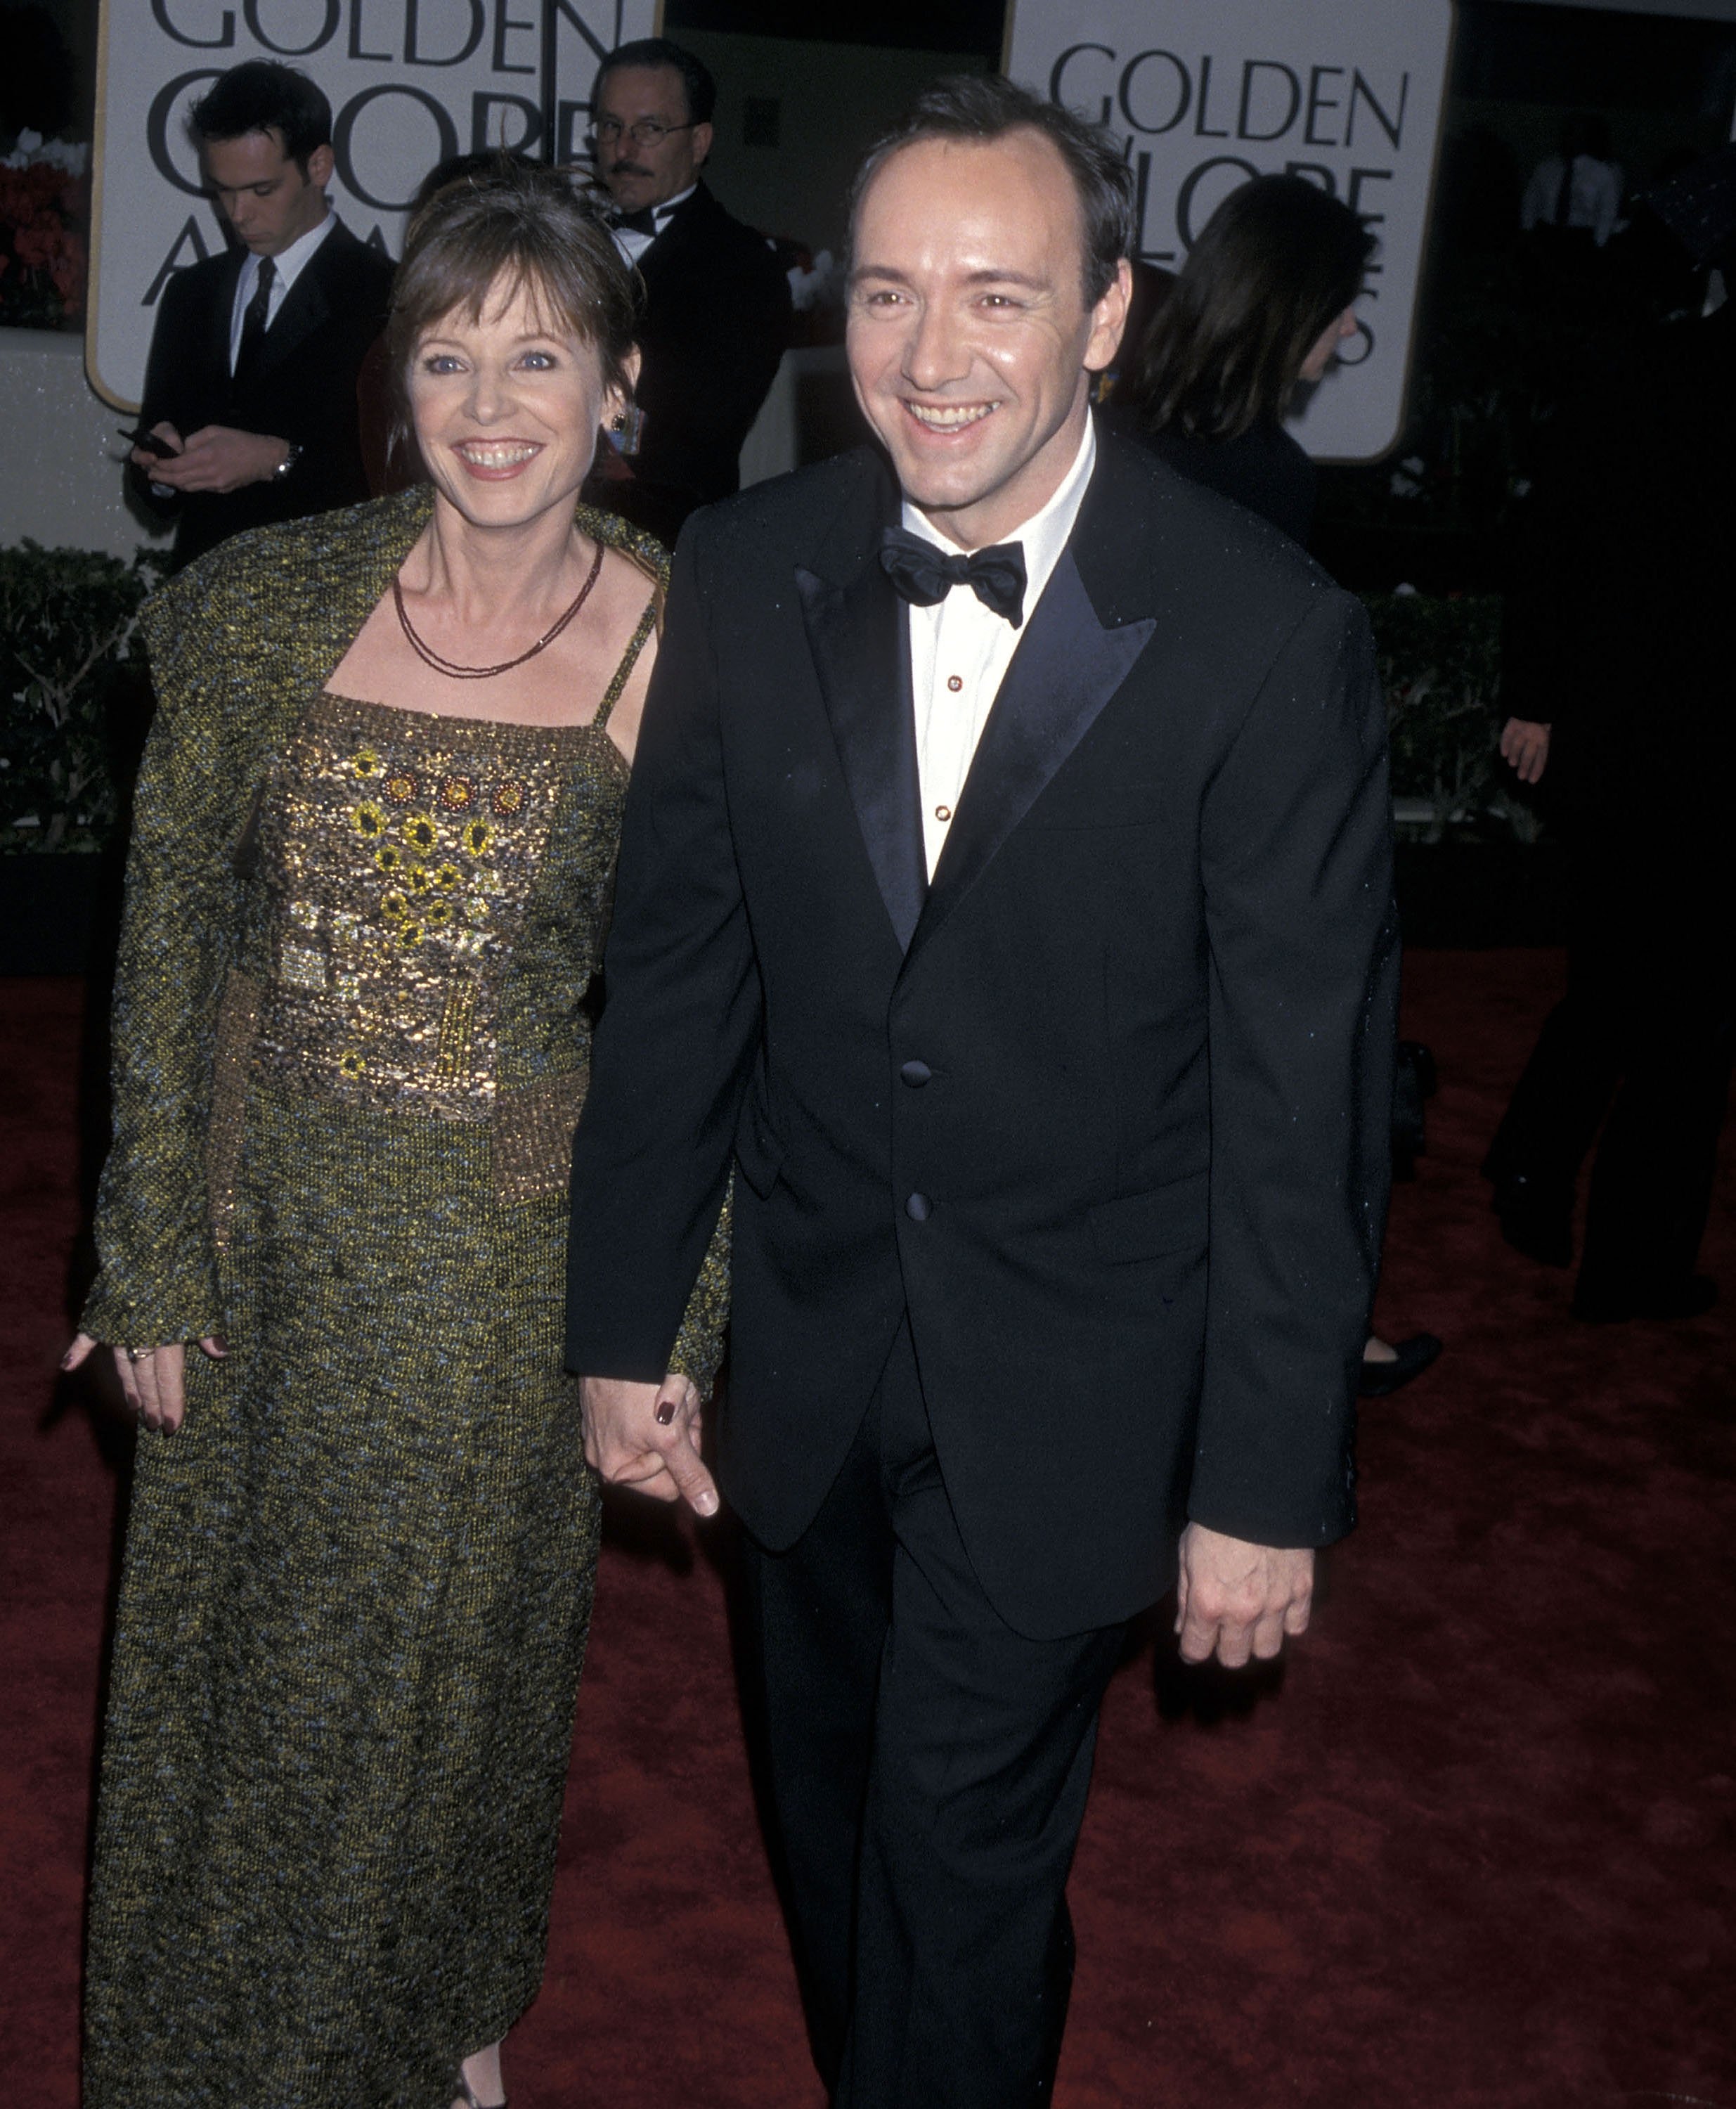 Dianne Dreyer und Kevin Spacey besuchen die 57th Annual Golden Globe Awards am 23. Januar 2000 im Beverly Hilton Hotel in Beverly Hills, Kalifornien | Quelle: Getty Images 